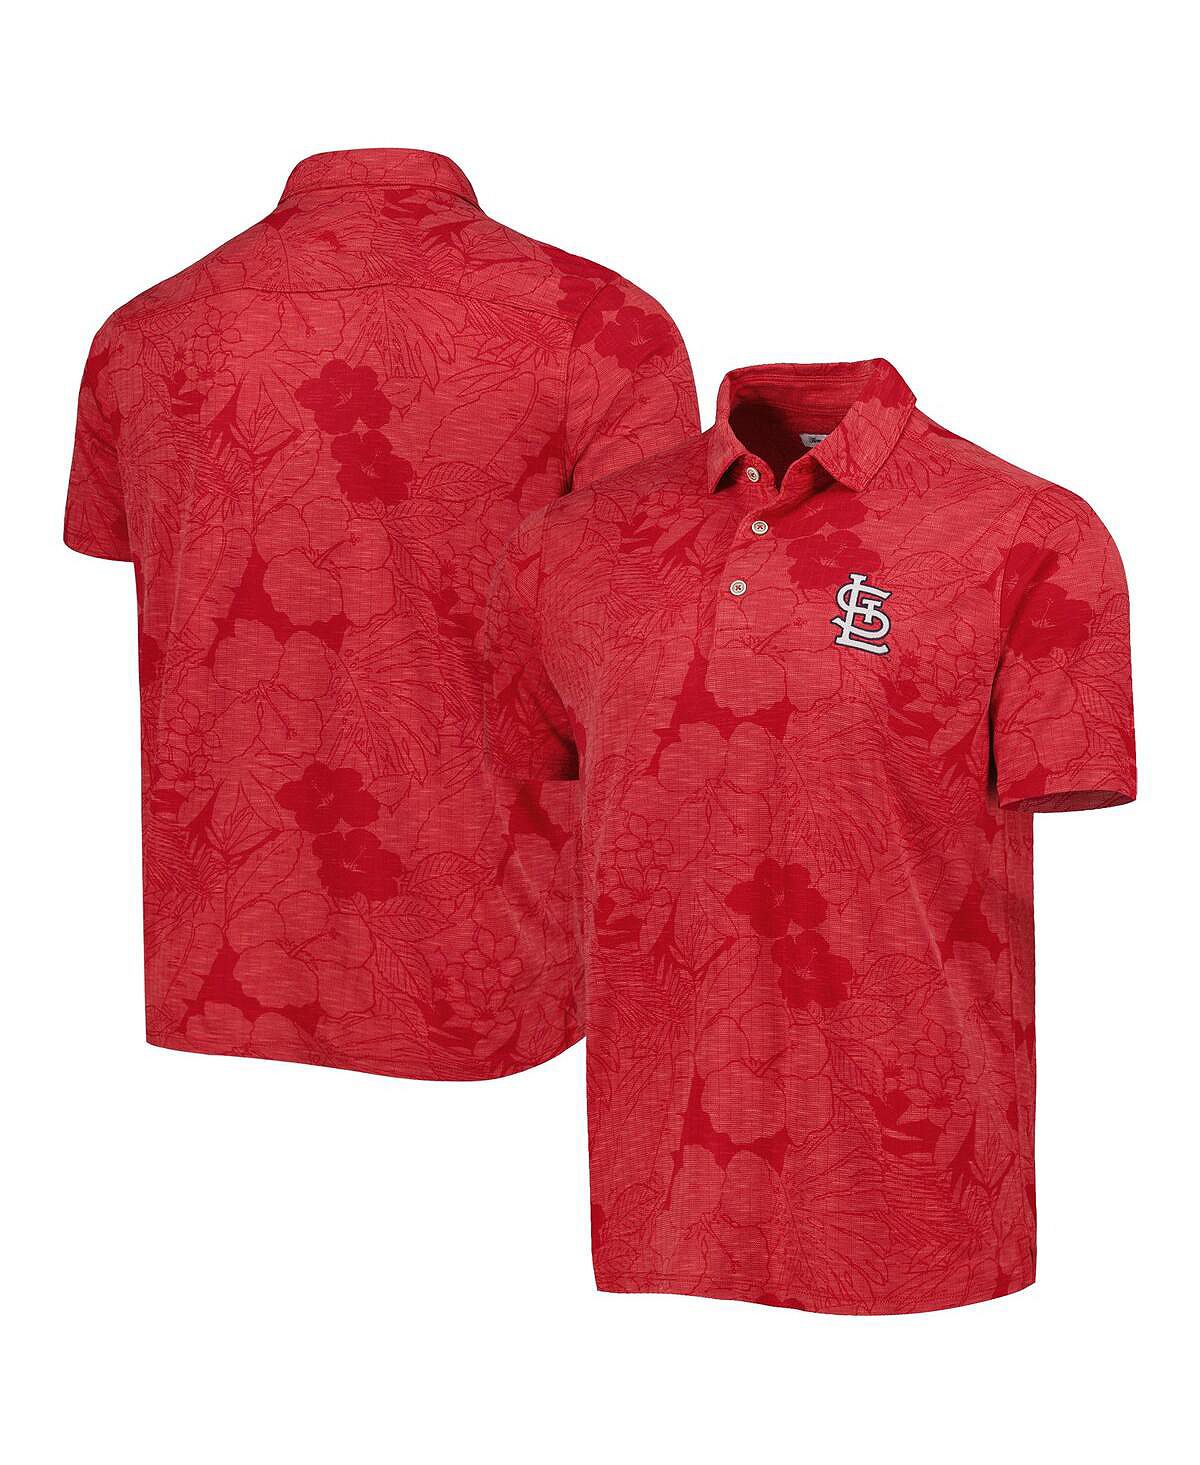 Мужская красная рубашка-поло St. Louis Cardinals Miramar Blooms Tommy Bahama